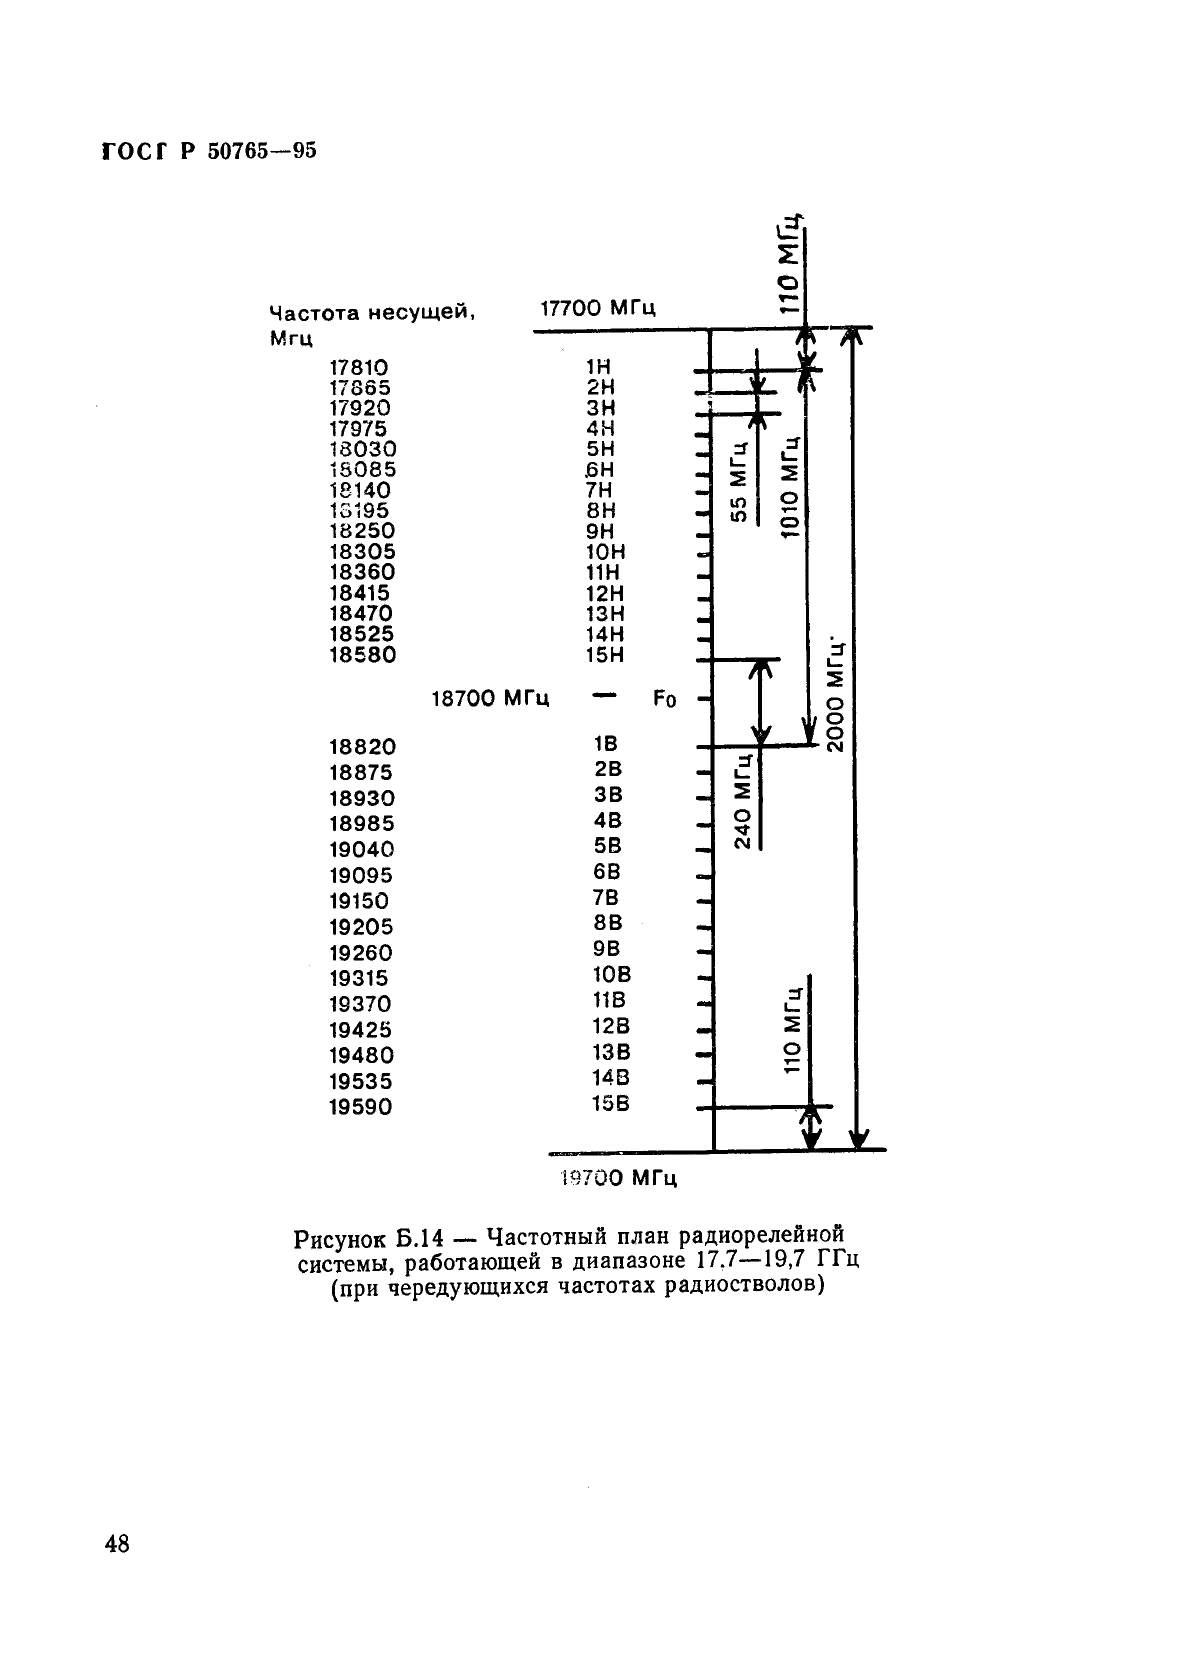 ГОСТ Р 50765-95 Аппаратура радиорелейная. Классификация. Основные параметры цепей стыка (фото 51 из 62)